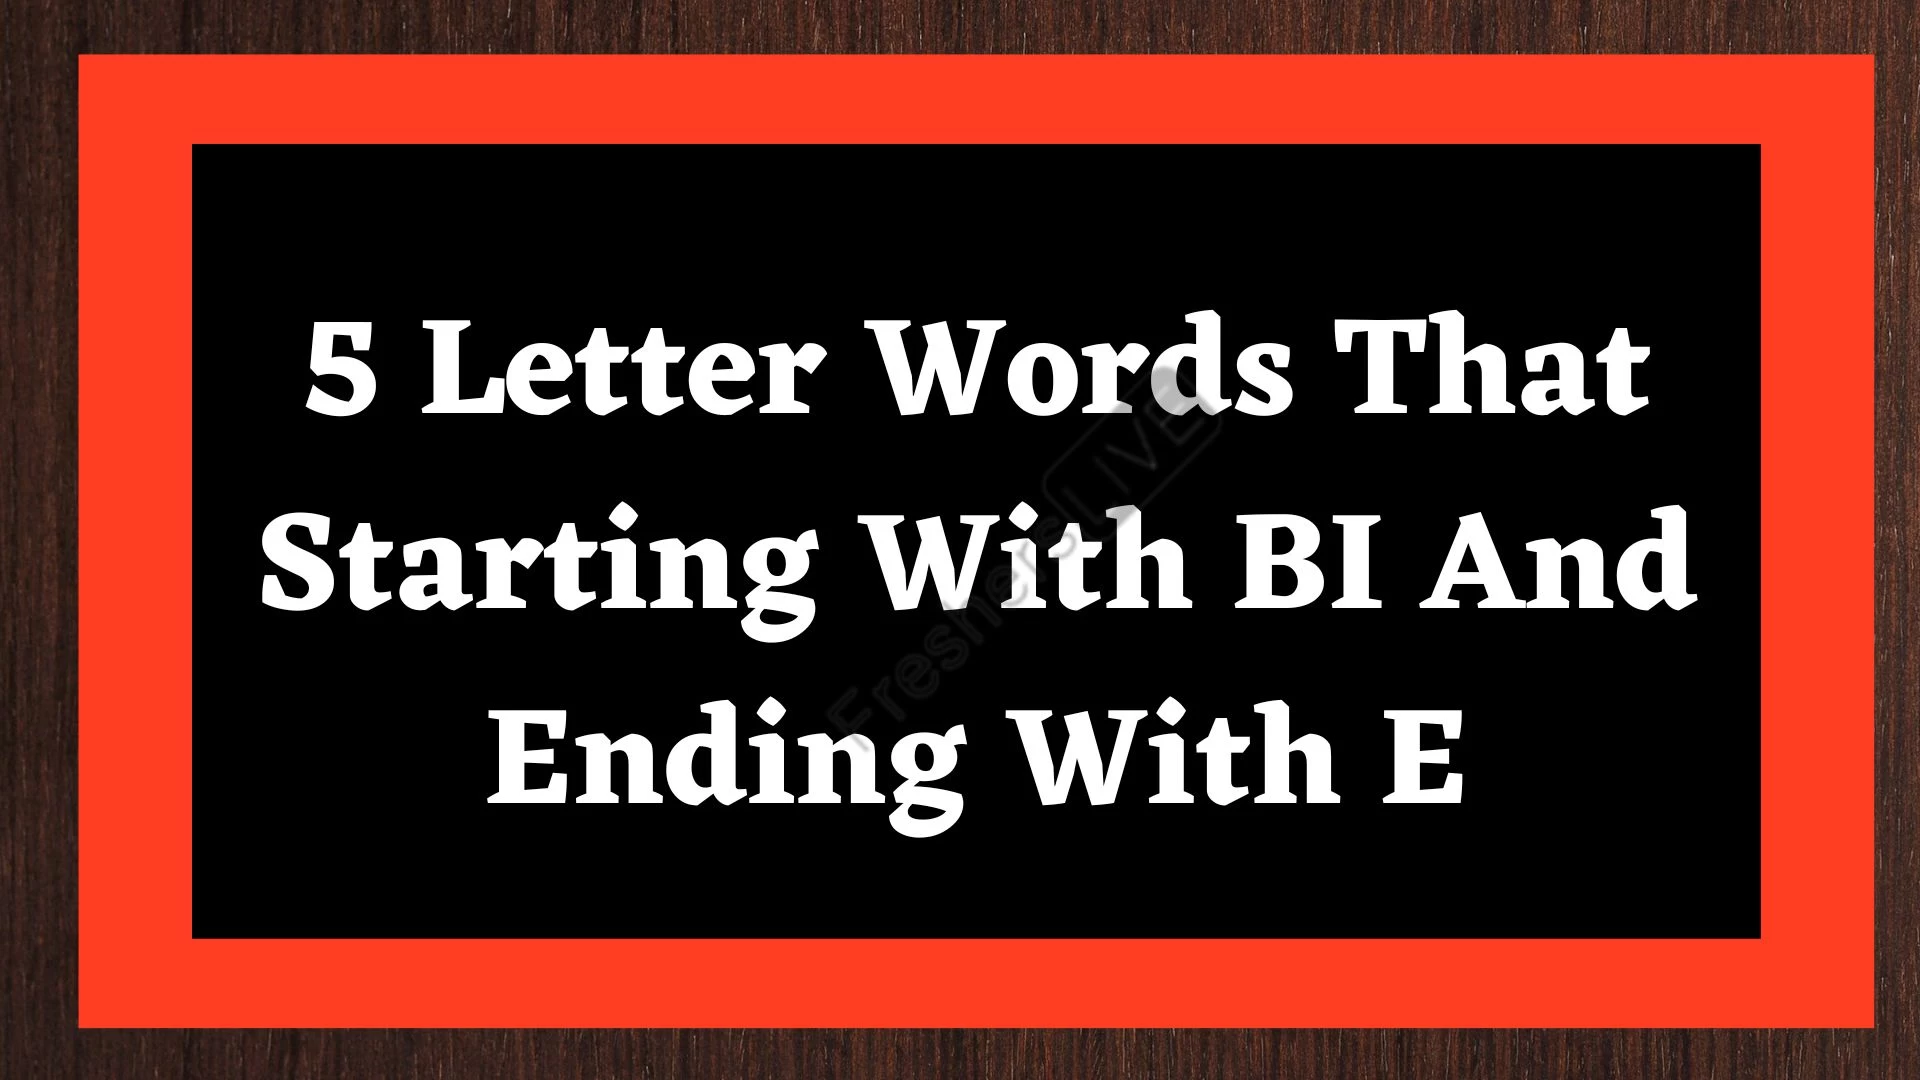 Palabras de 5 letras que comienzan con BI y terminan con E.